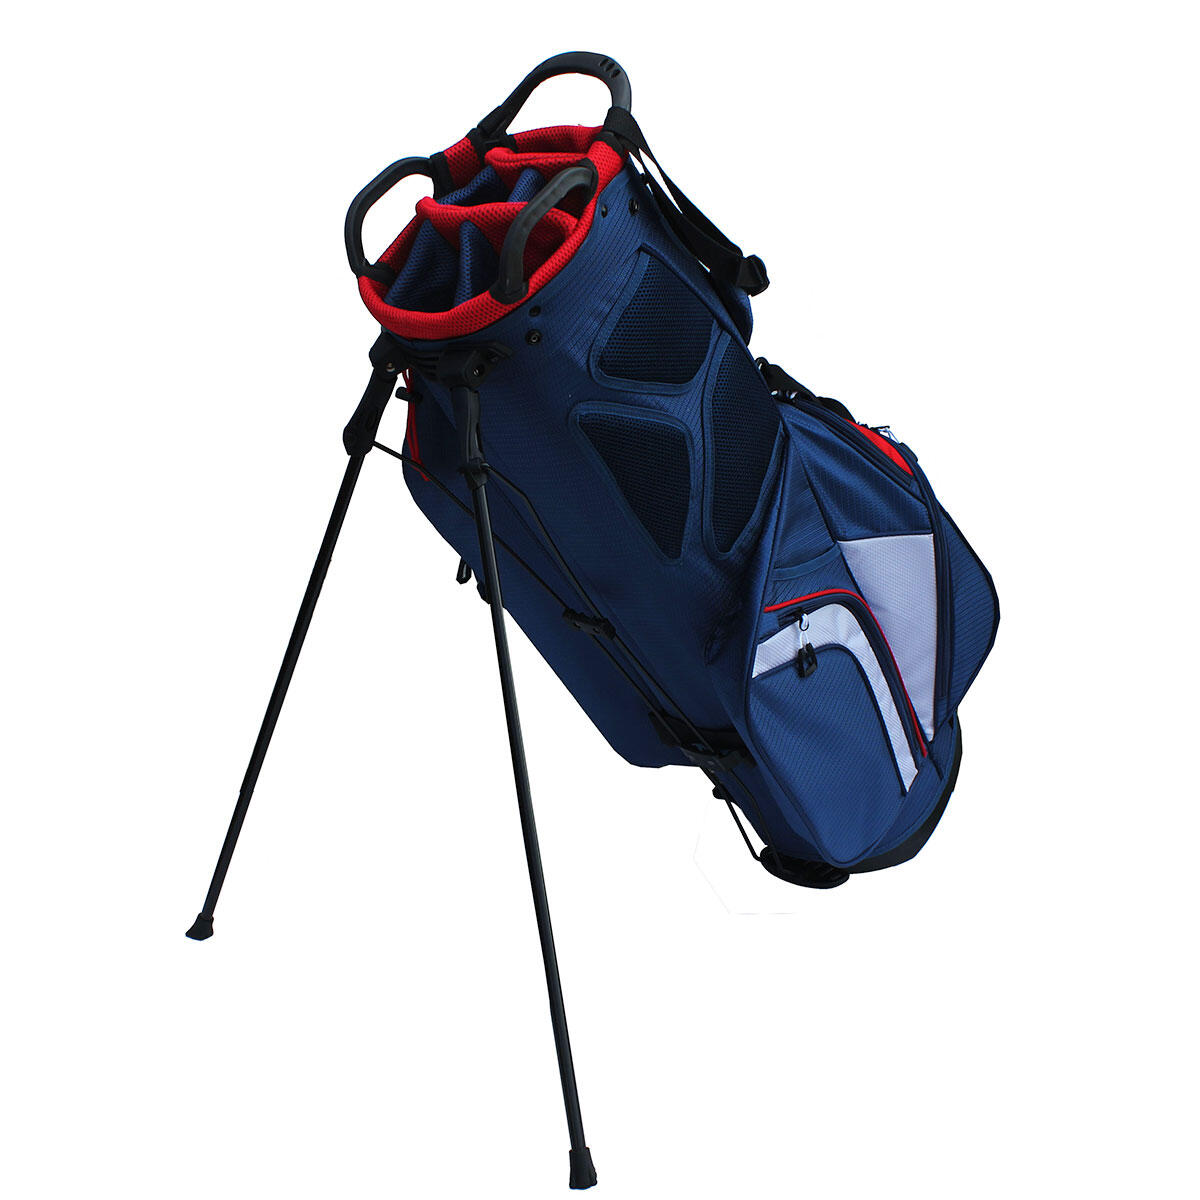 Benross Pro-Lite 2.0 Golf Stand Bag 2/4